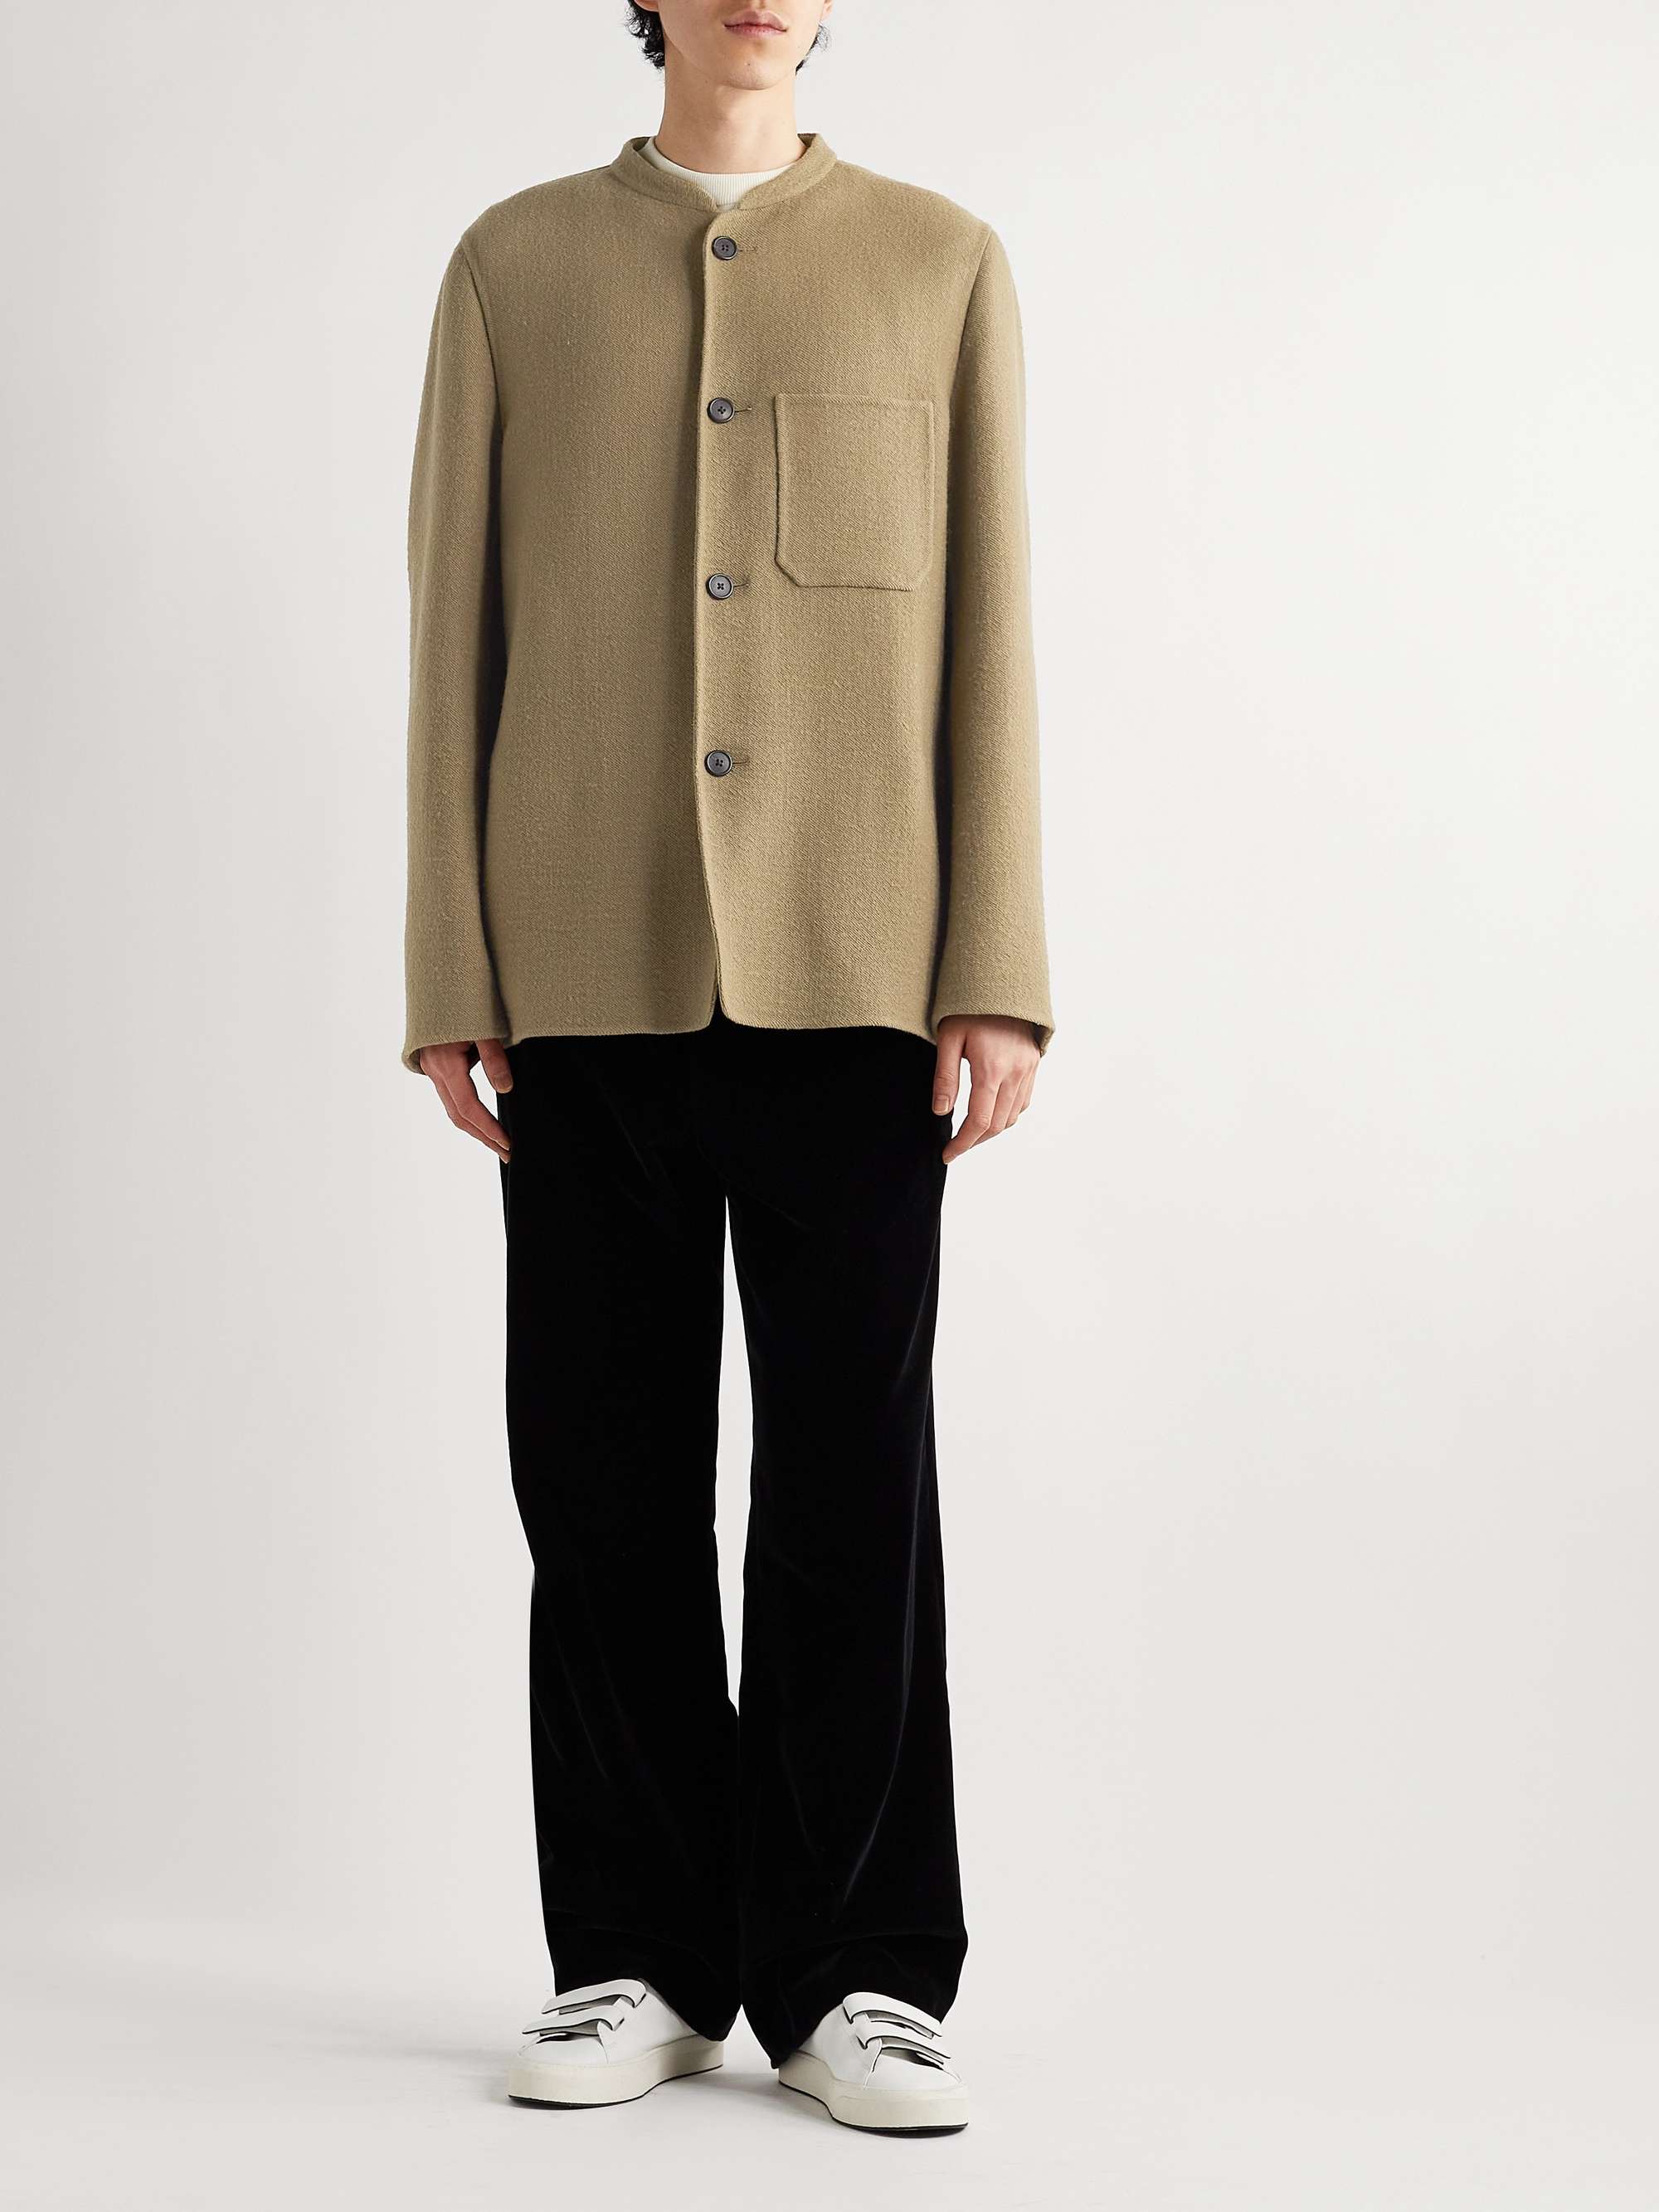 THE ROW Everett Wool-Blend Jacket for Men | MR PORTER